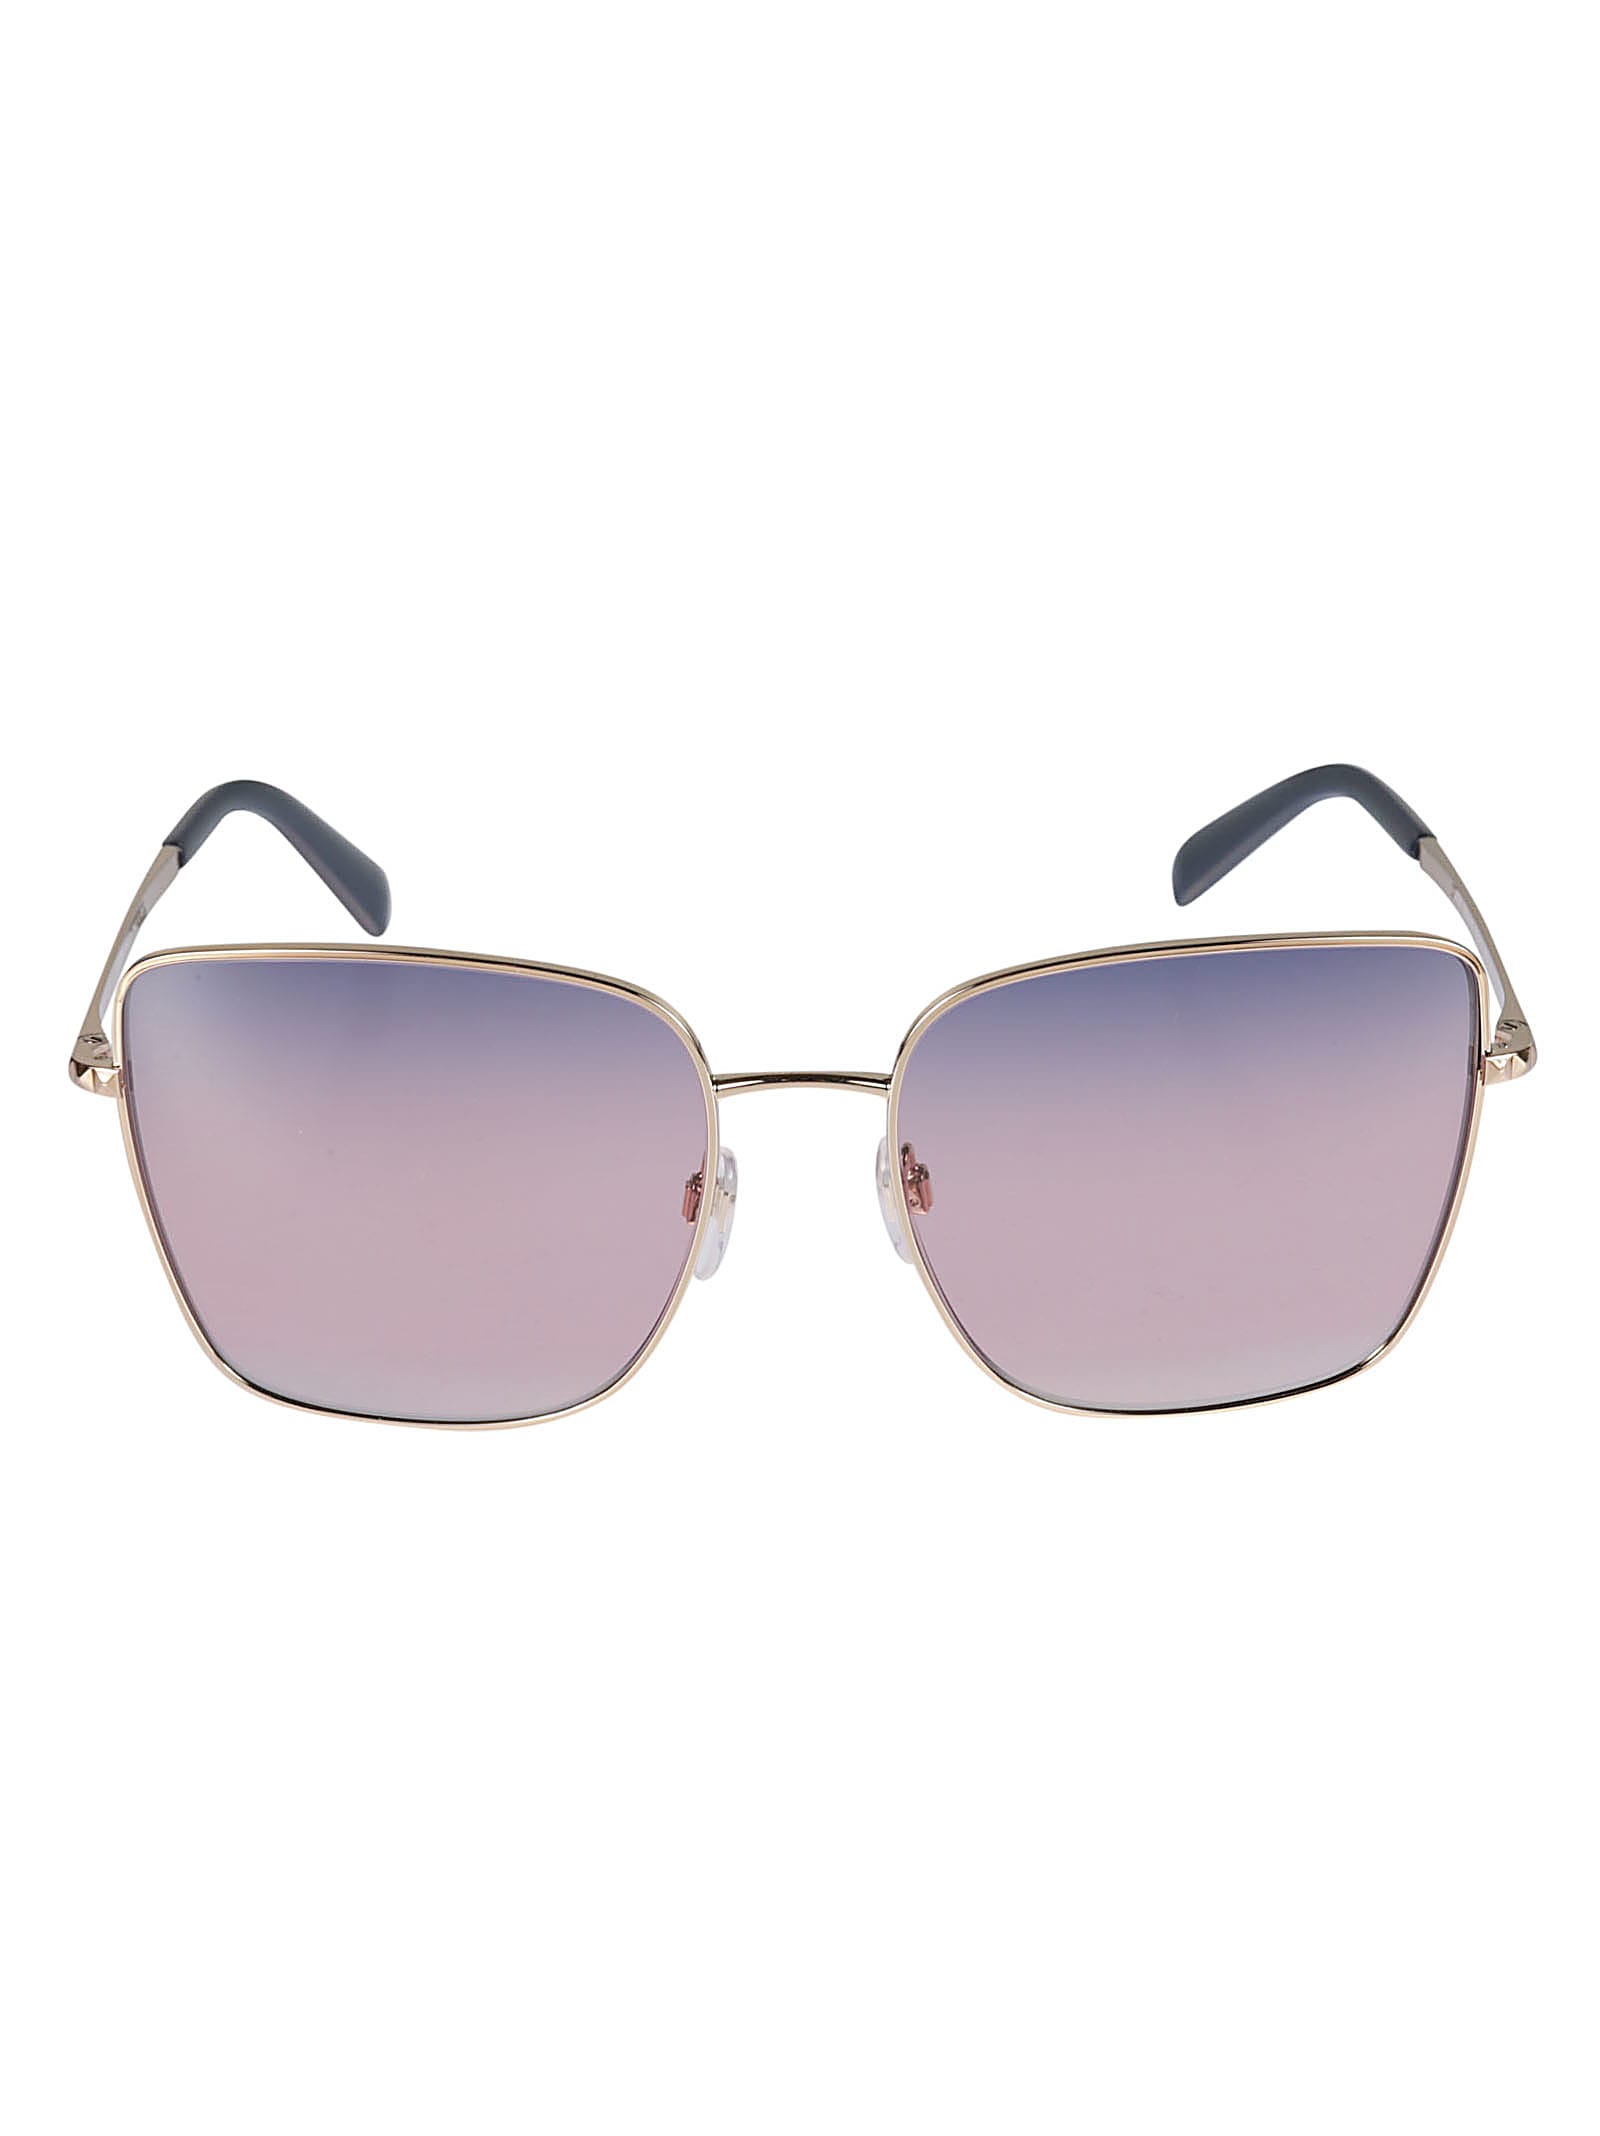 Valentino Sole3004/16 Sunglasses